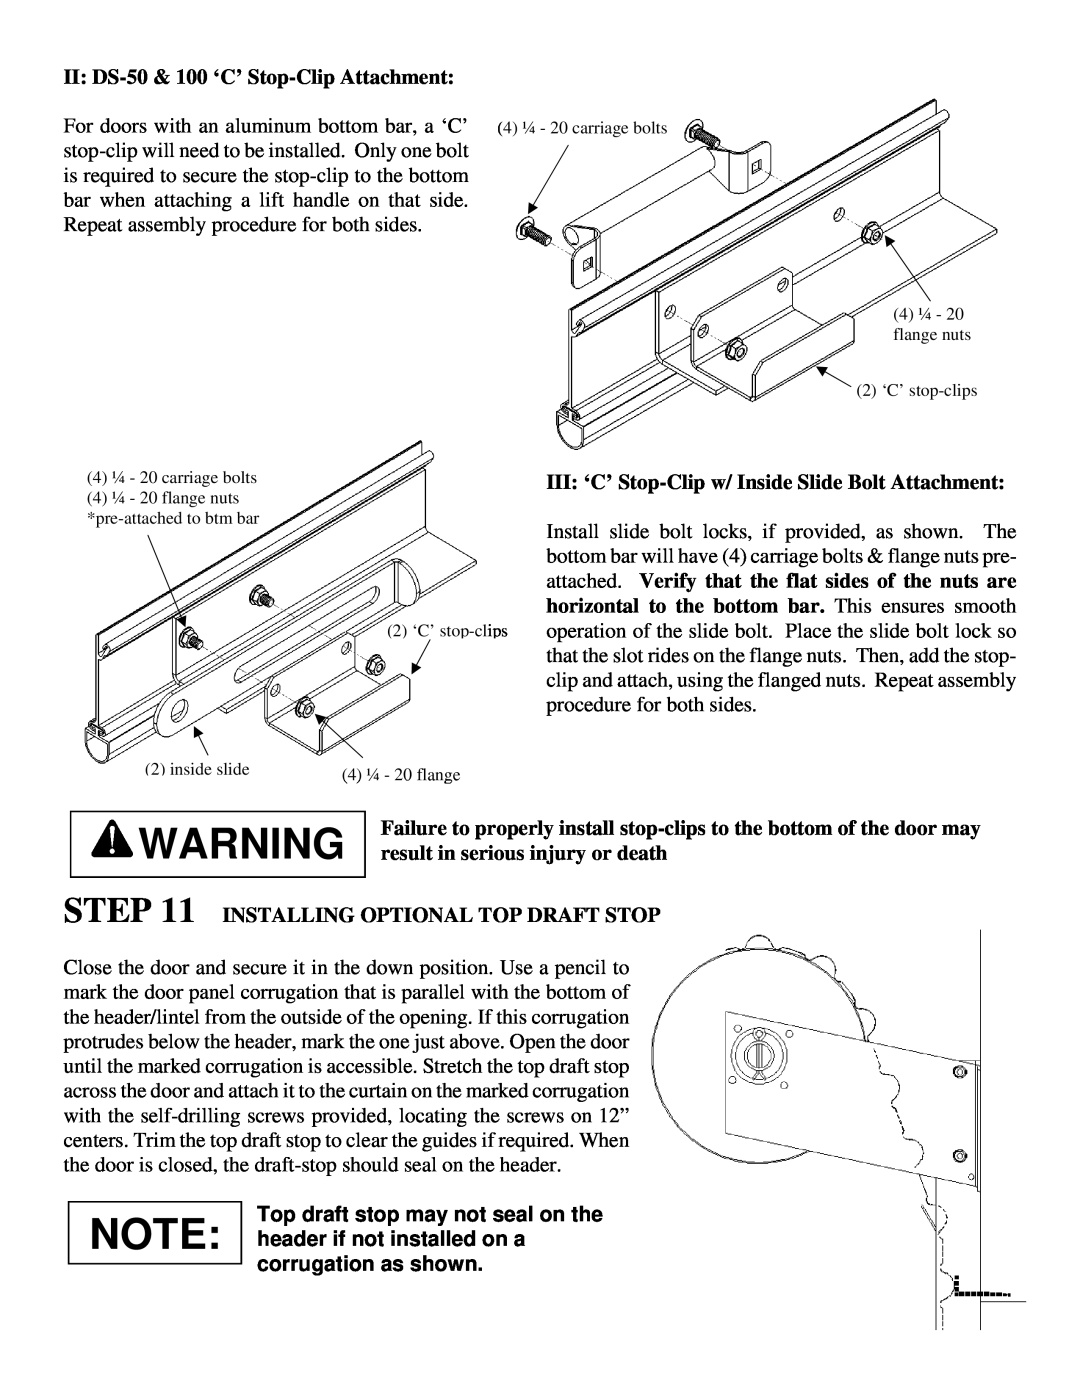 Wayne-Dalton DS-75 II DS-50& 100 ‘C’ Stop-ClipAttachment, III ‘C’ Stop-Clipw/ Inside Slide Bolt Attachment, inside slide 